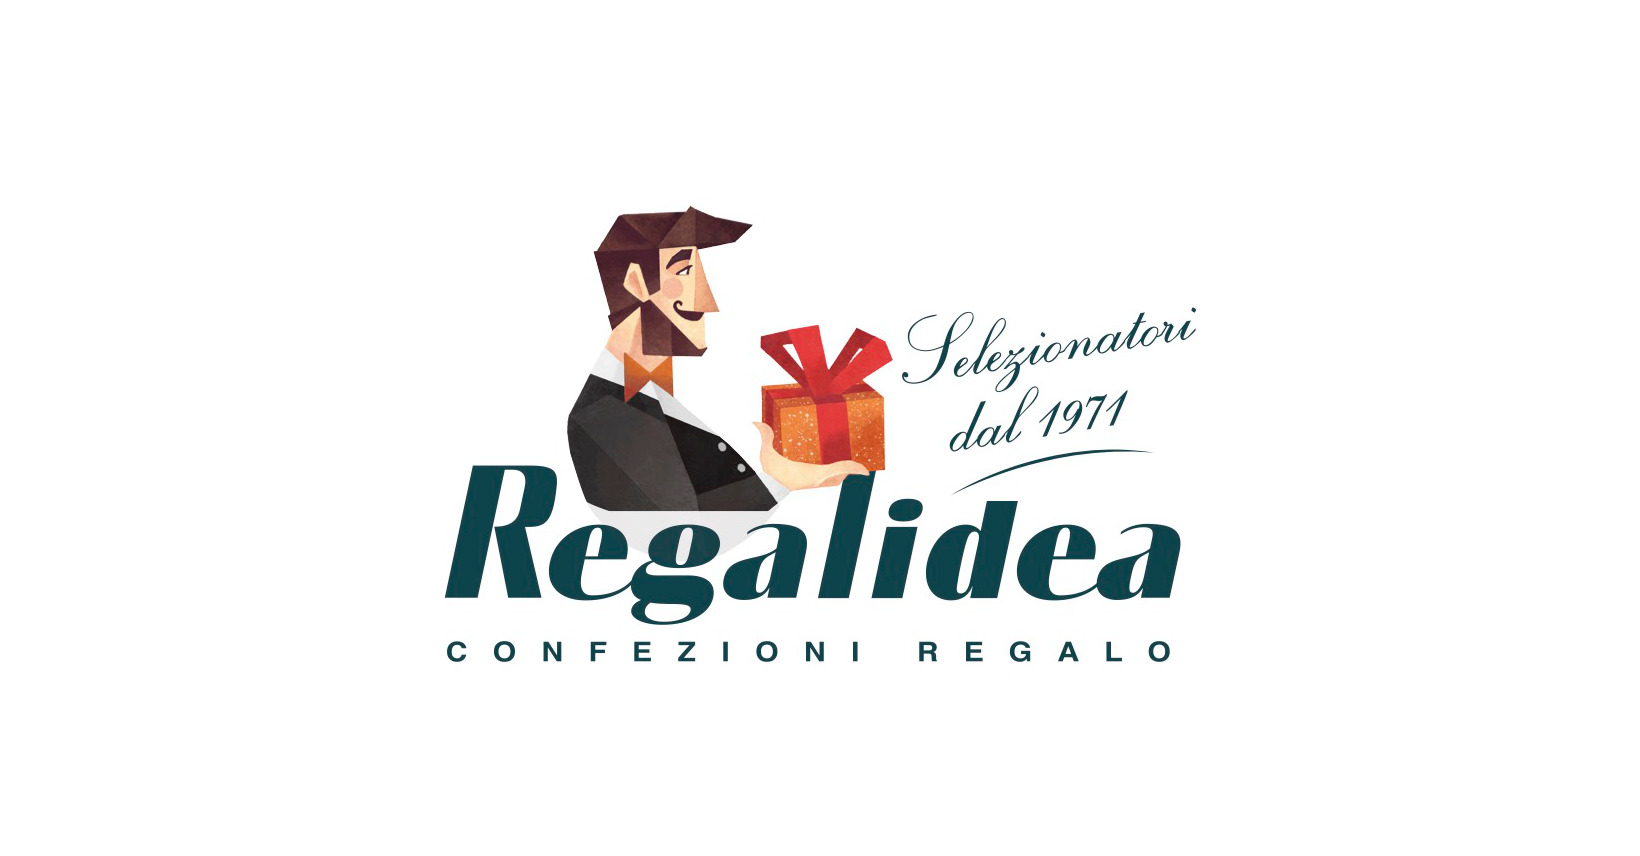 (c) Regalidea.net